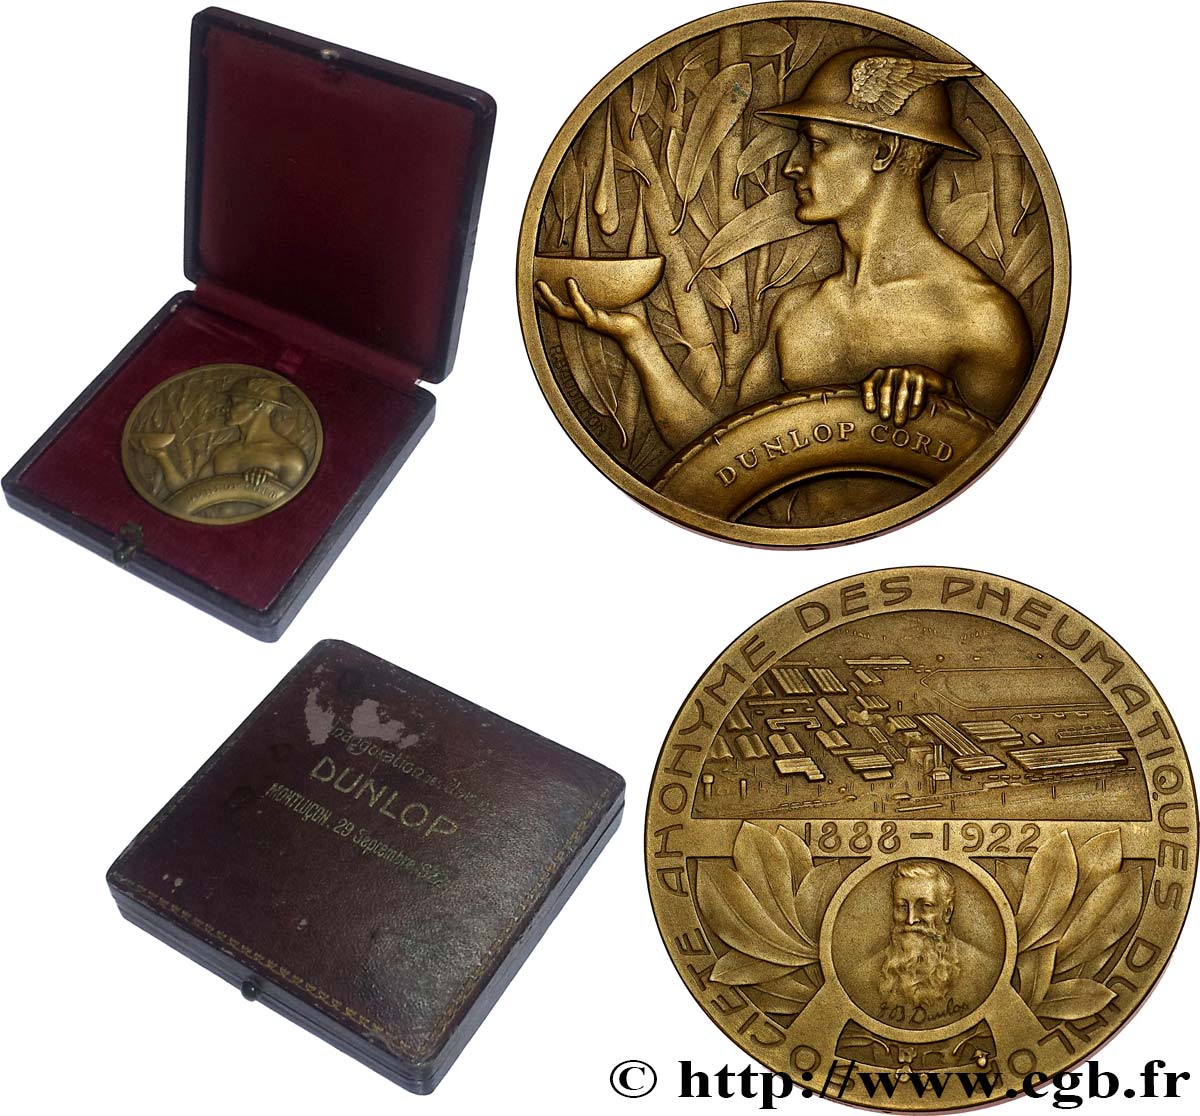 DRITTE FRANZOSISCHE REPUBLIK Médaille, John Boyd Dunlop, Société anonyme des pneumatiques, Inauguration des usines fVZ